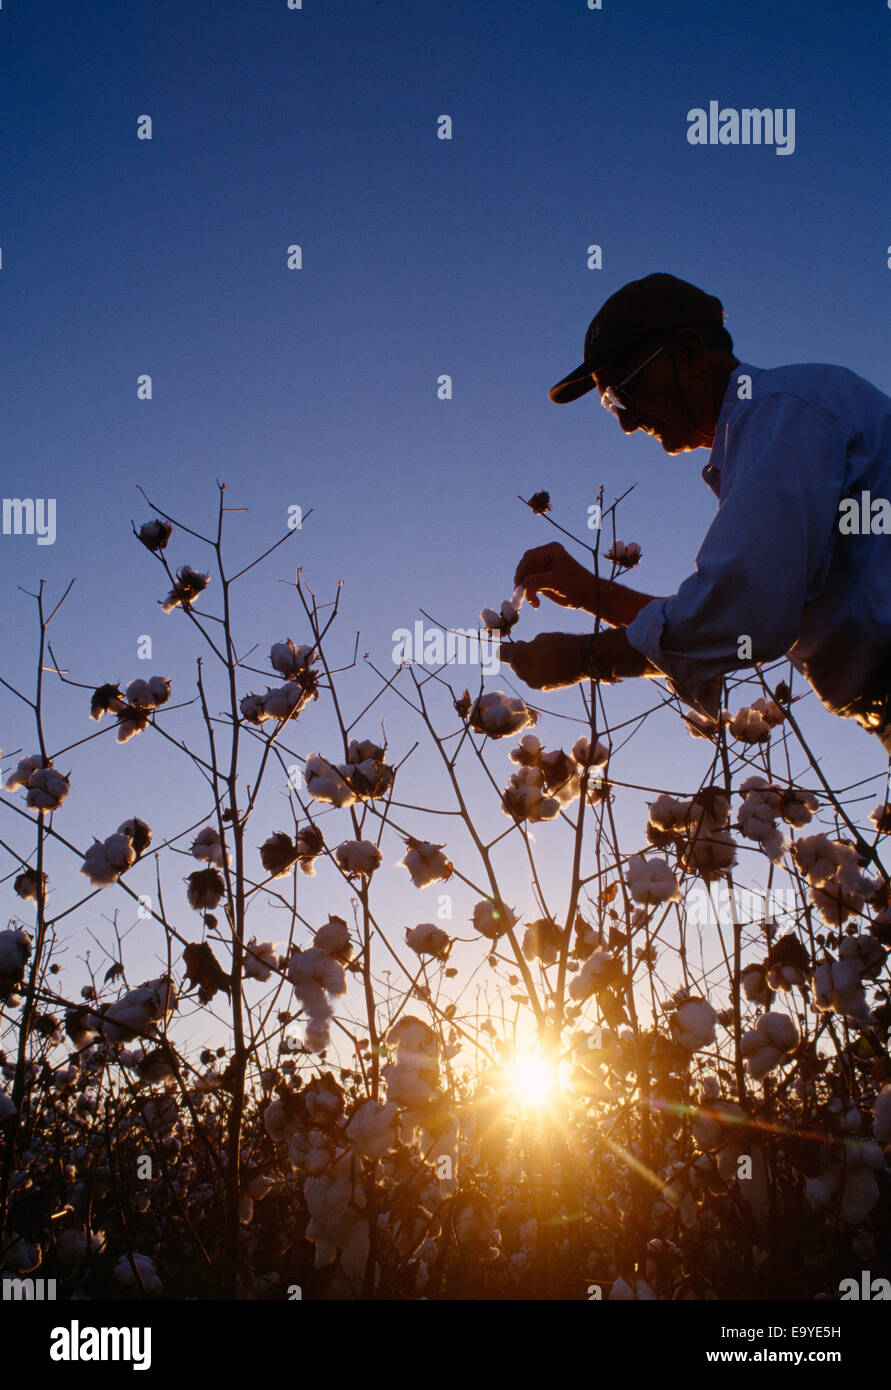 Landwirtschaft - Silhouette der Ernte Berater überprüfen Ernte Bühne Baumwolle bei Sonnenuntergang / Mississippi, USA. Stockfoto